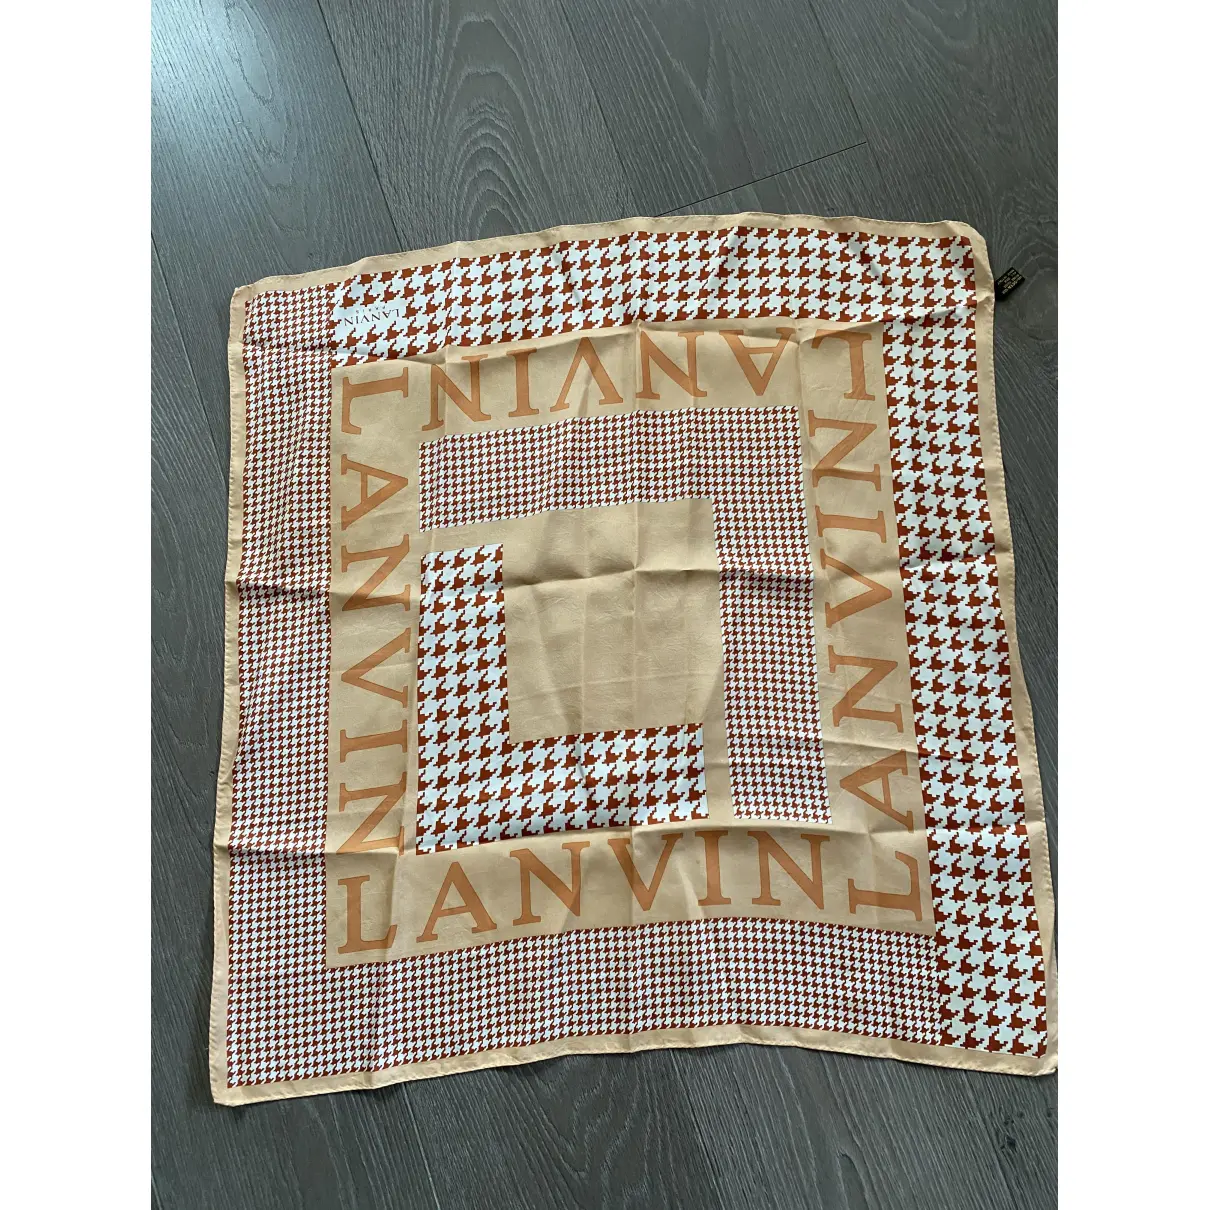 Buy Lanvin Silk handkerchief online - Vintage